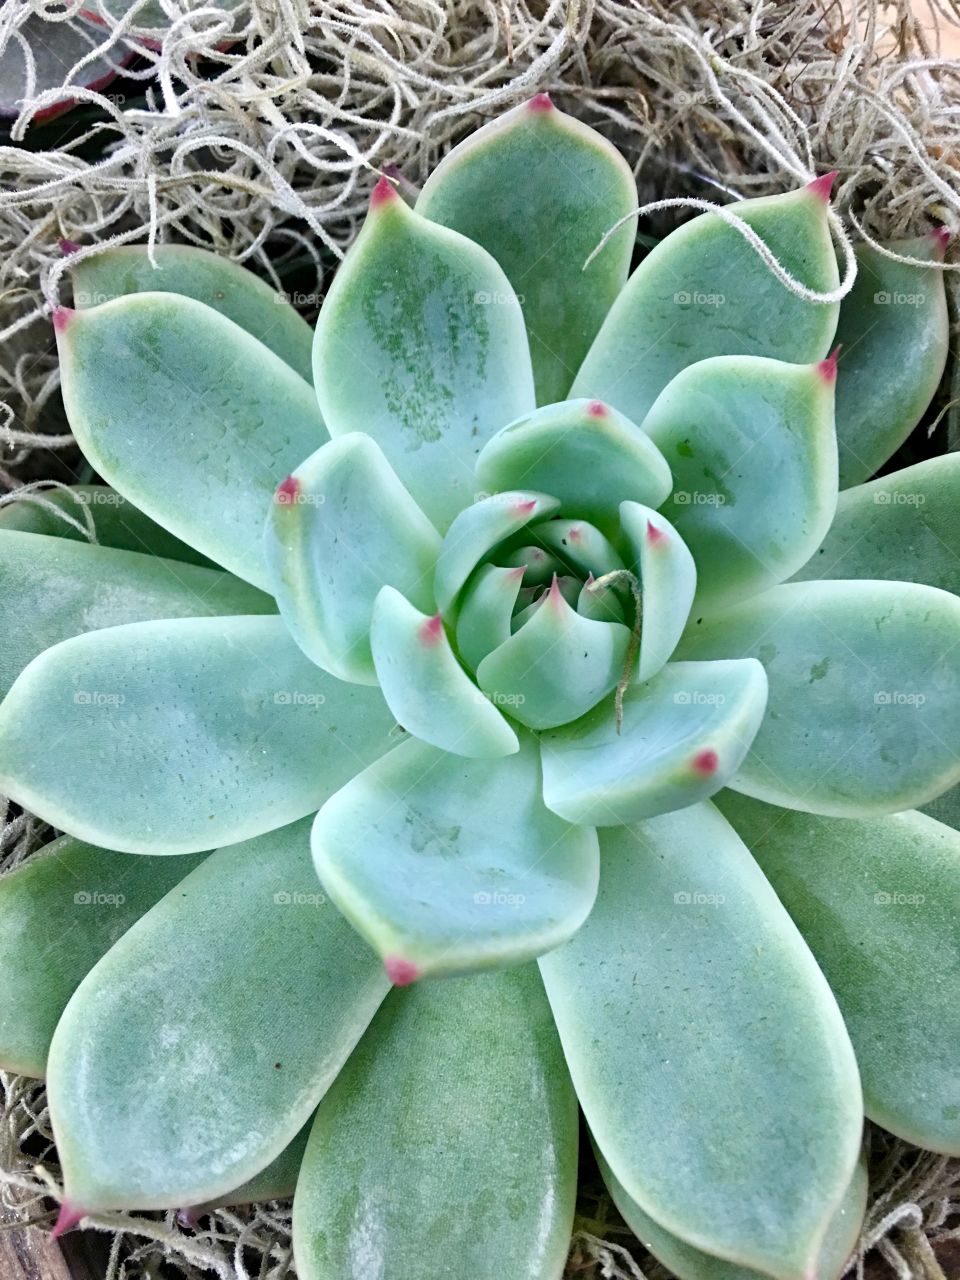 Succulent